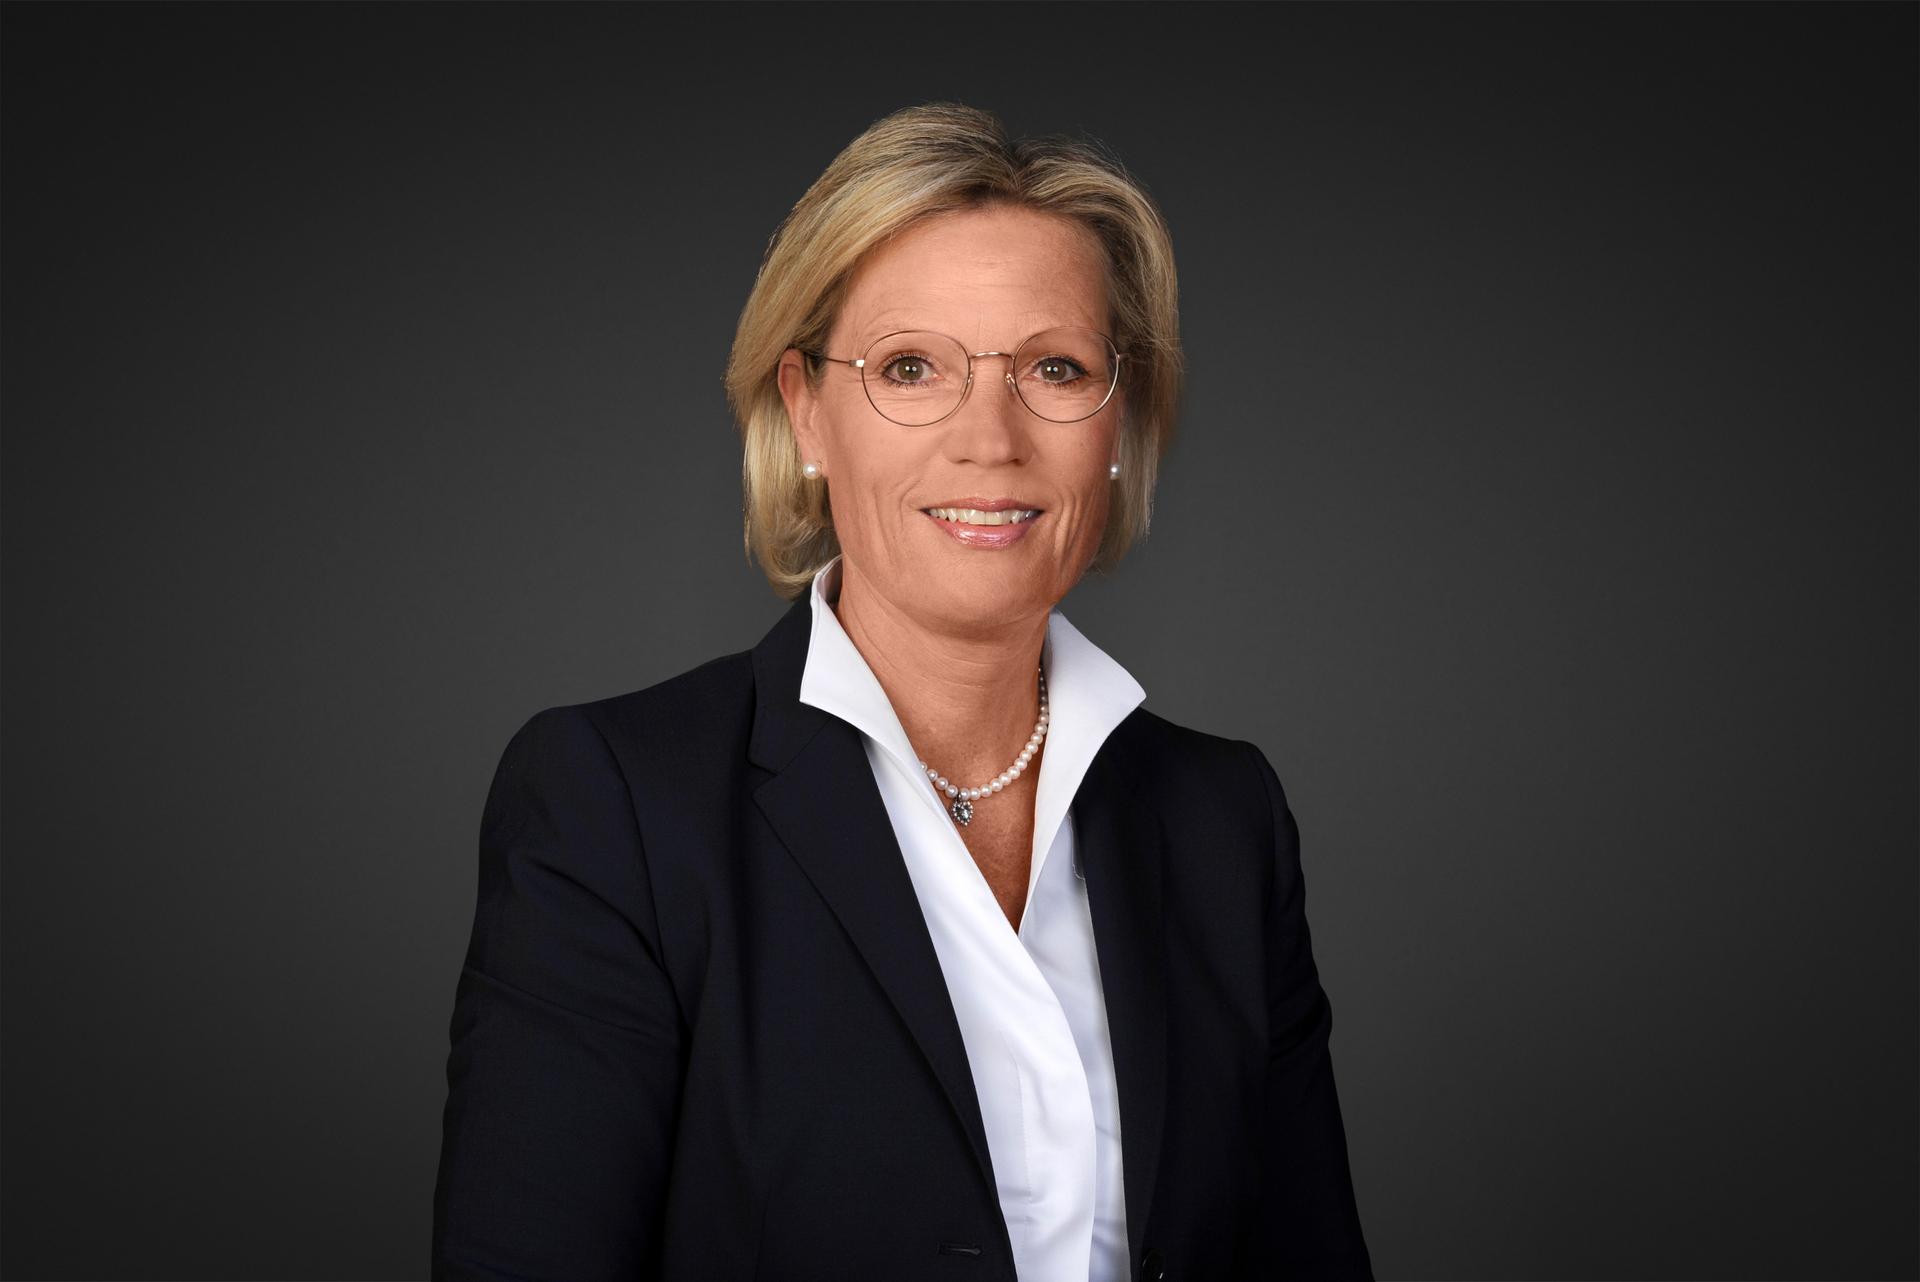 Portrait of Marel Weideneder, Head of Munich branch